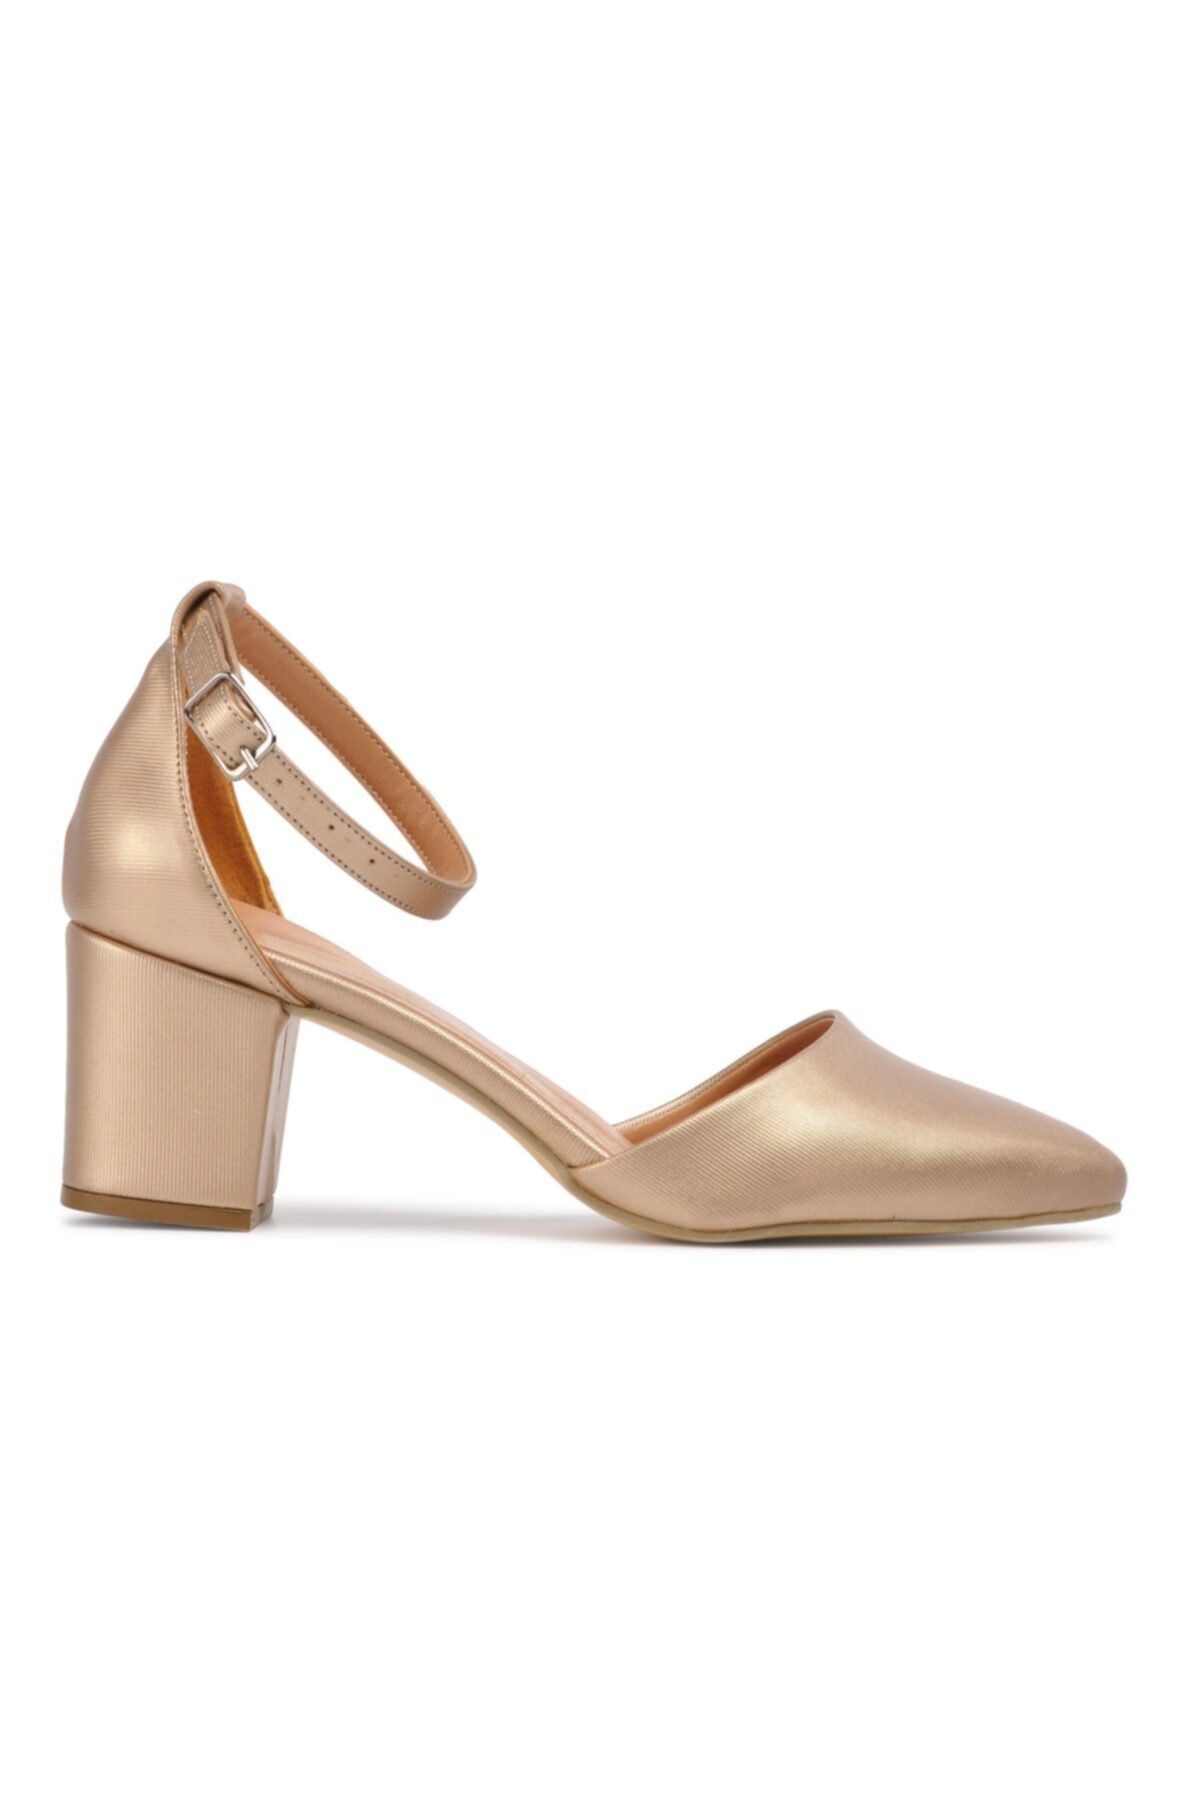 Maje Altın Şanel Kadın Topuklu Ayakkabı